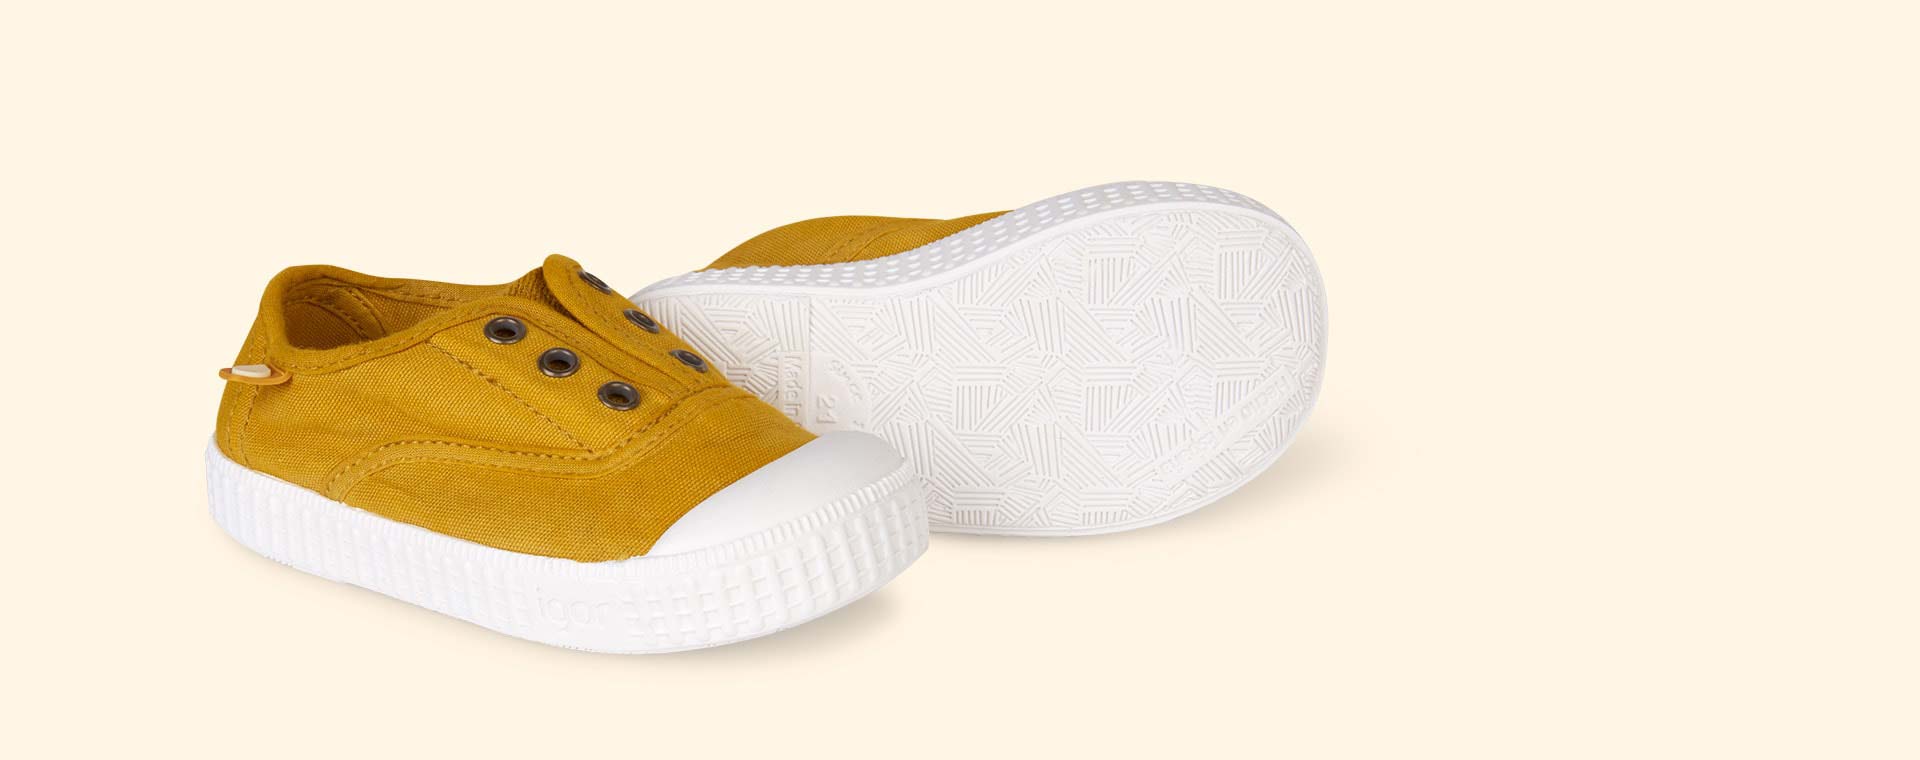 Buy the igor Berri Tennis Shoe at KIDLY UK